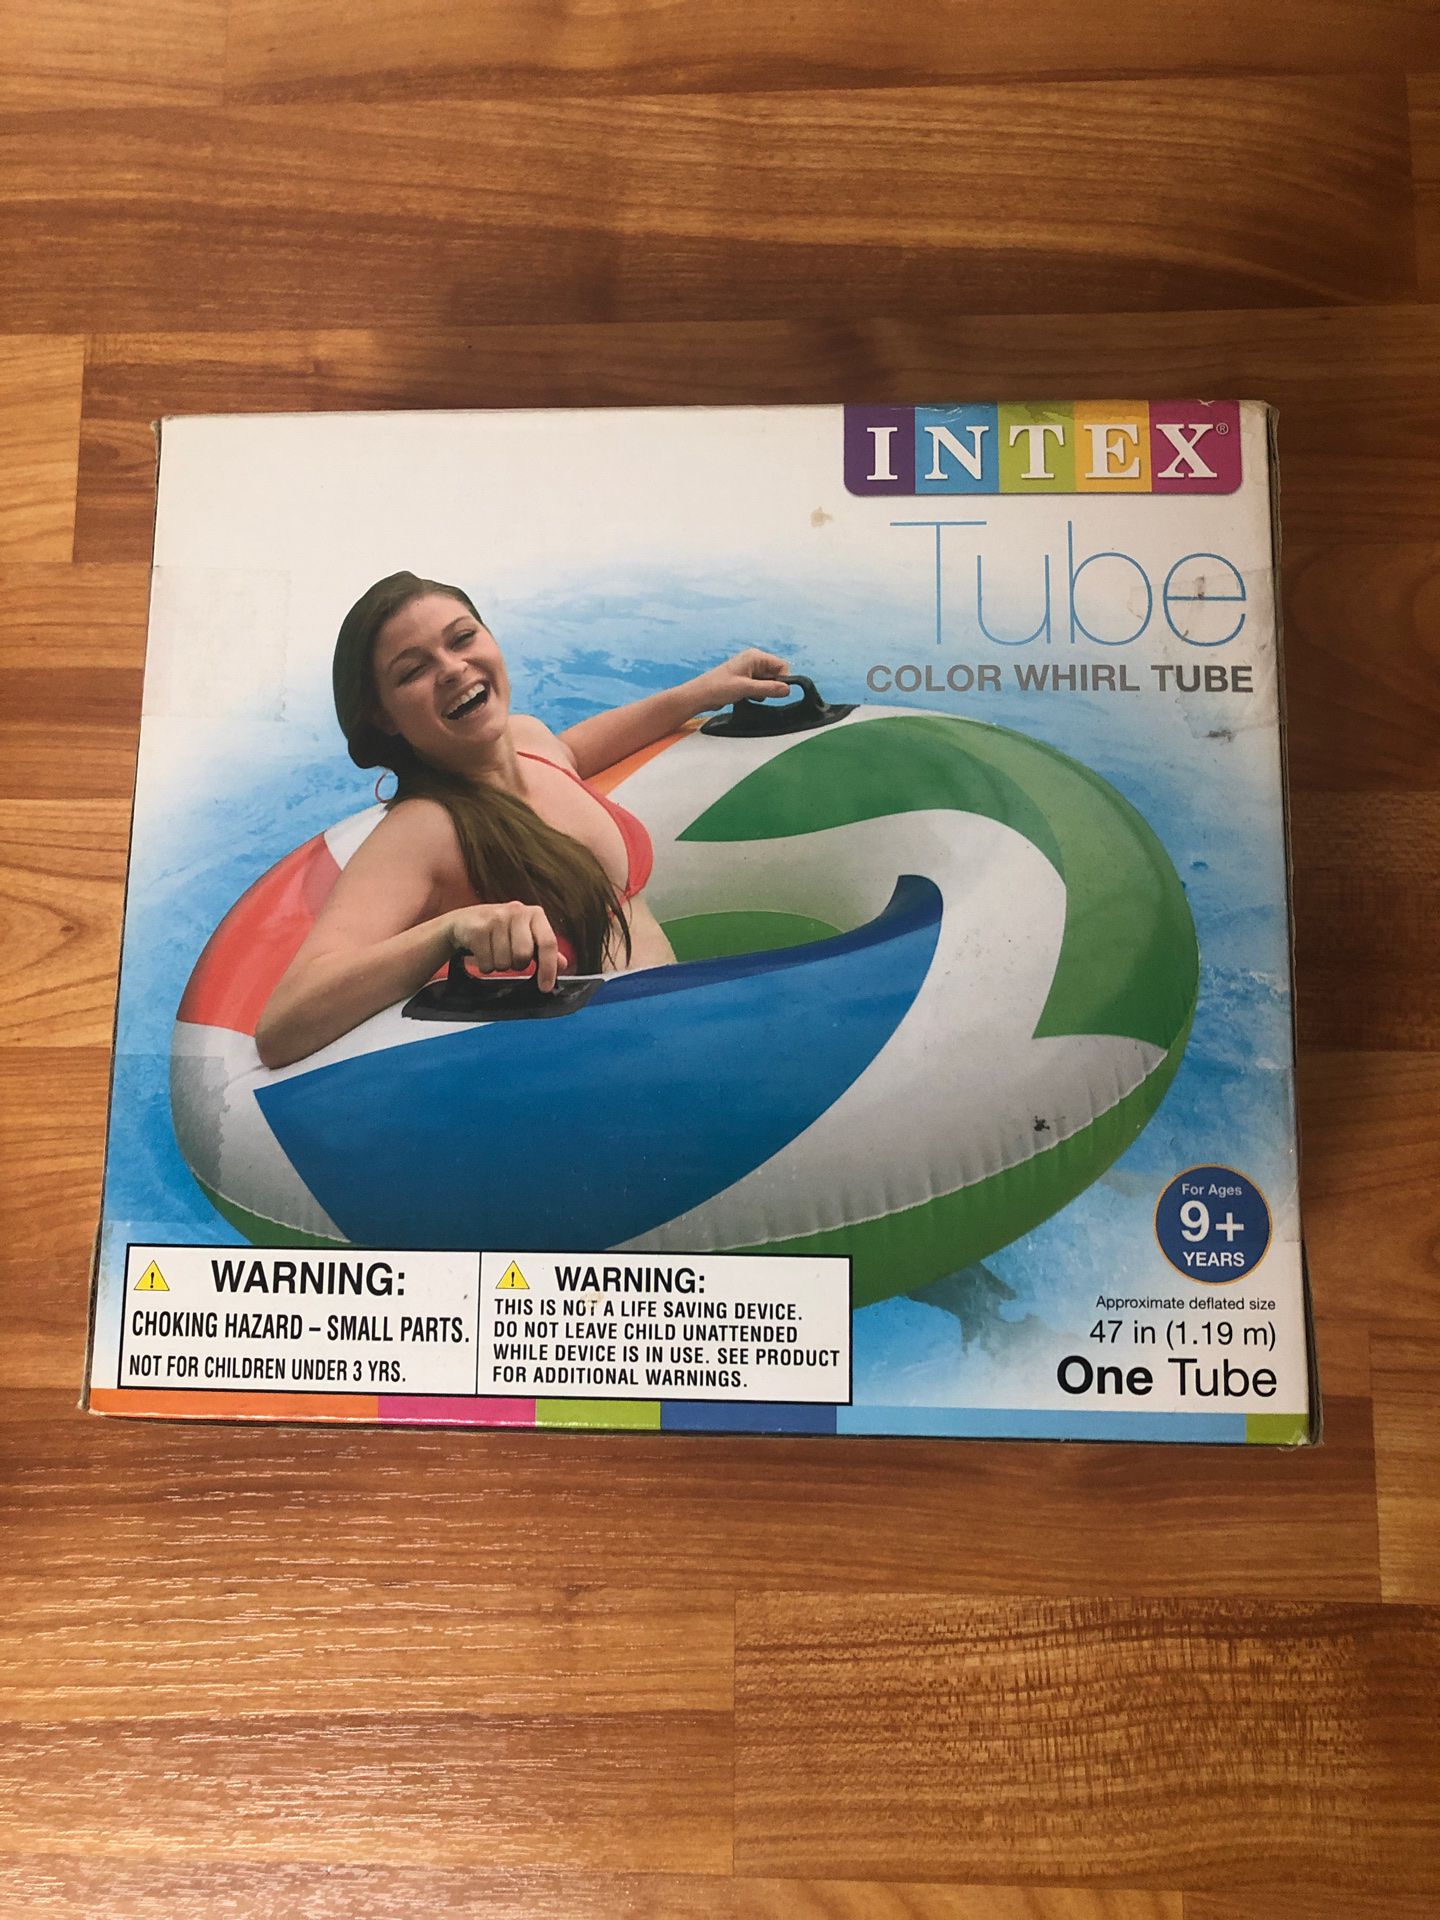 Intex tube